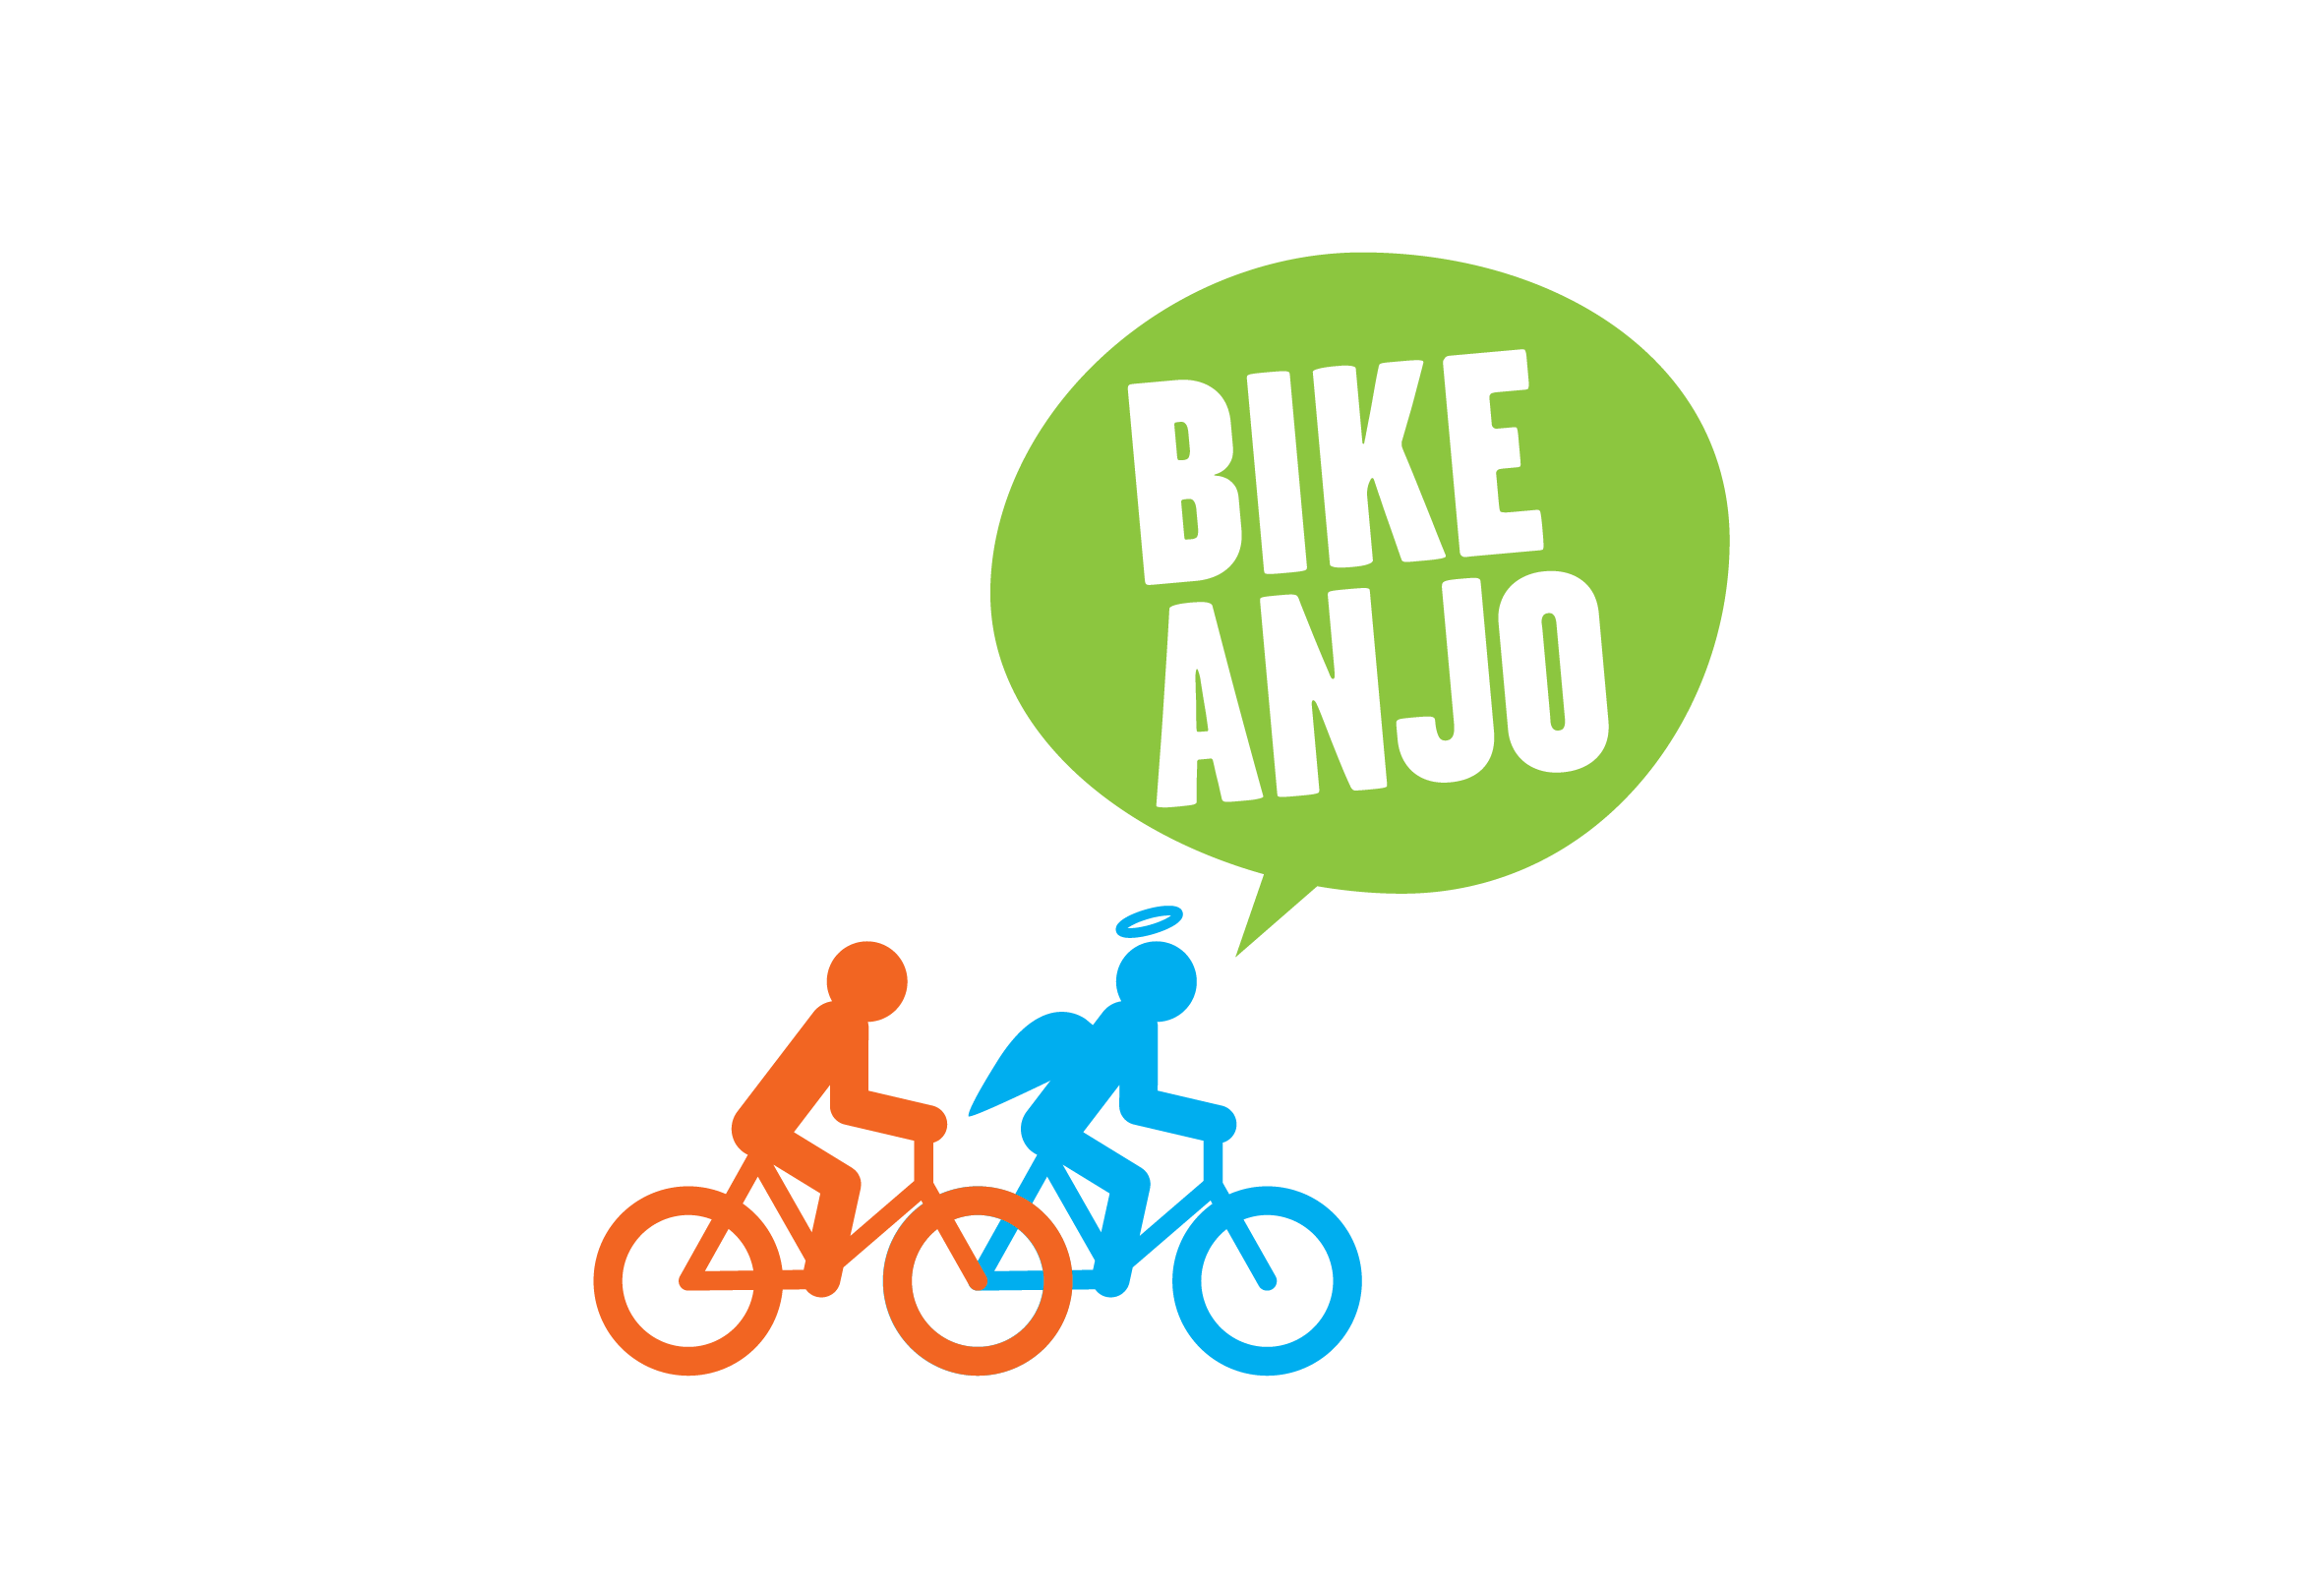 Logo do Bike Anjo, com a ilustração de um humano e um anjo andando de bicicleta, nas cores verde, azul e laranja.